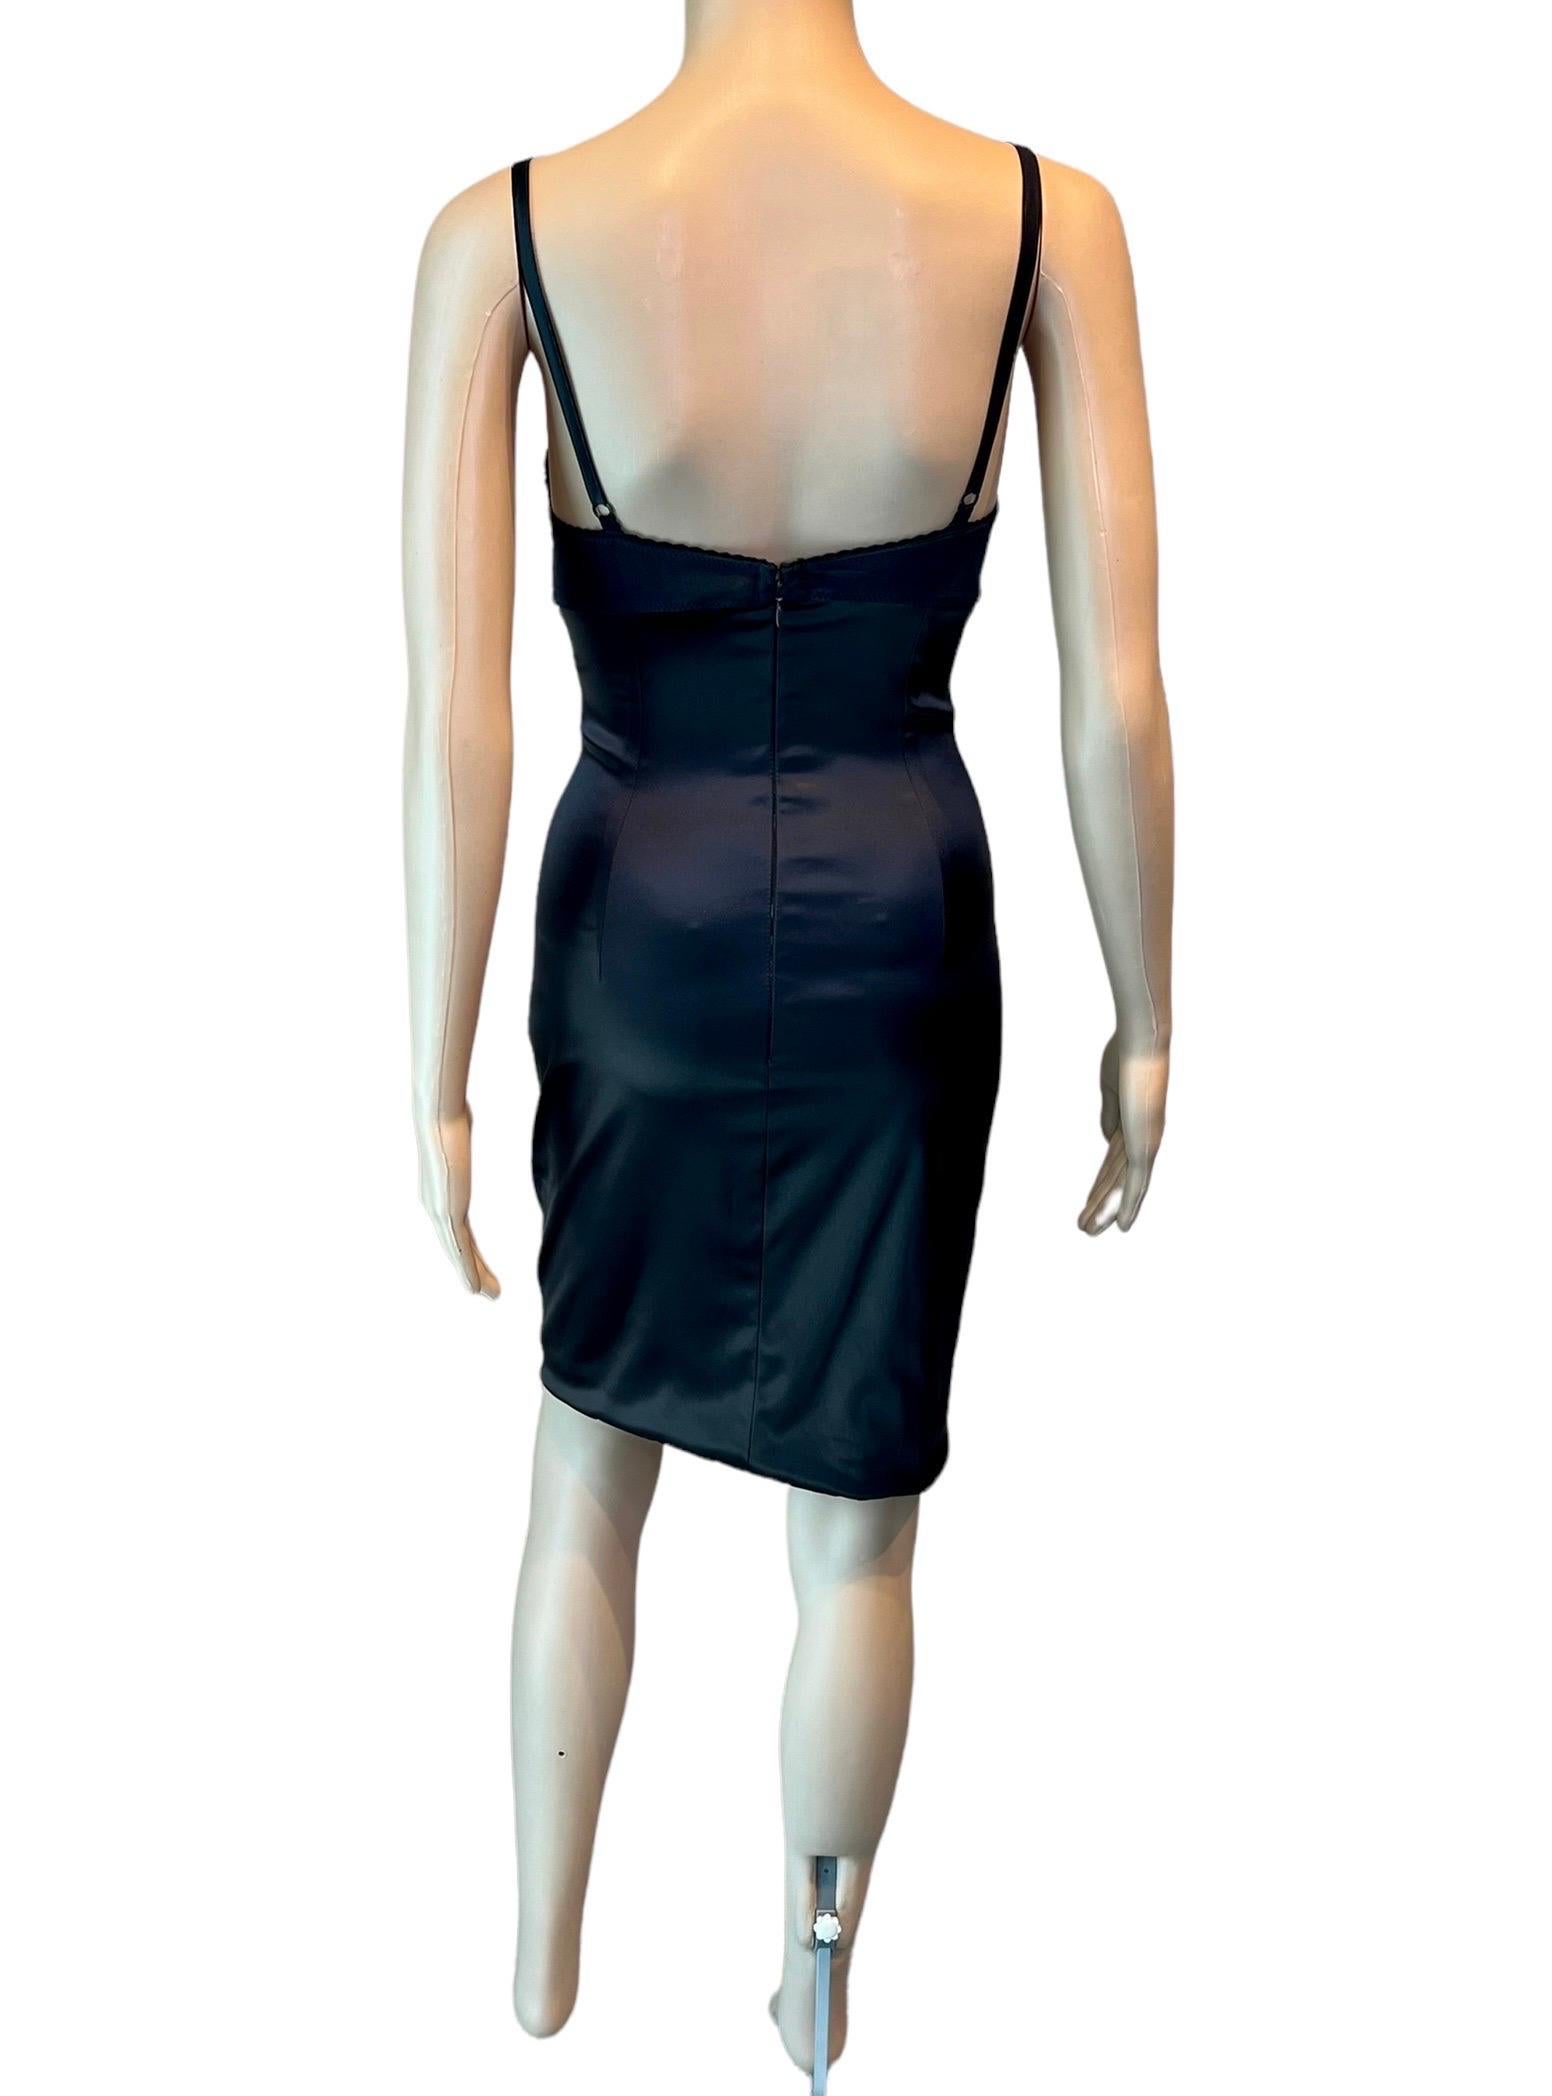 Dolce & Gabbana S/S 2005 Python Leather Bustier Bra Bodycon Silk Mini Dress 6